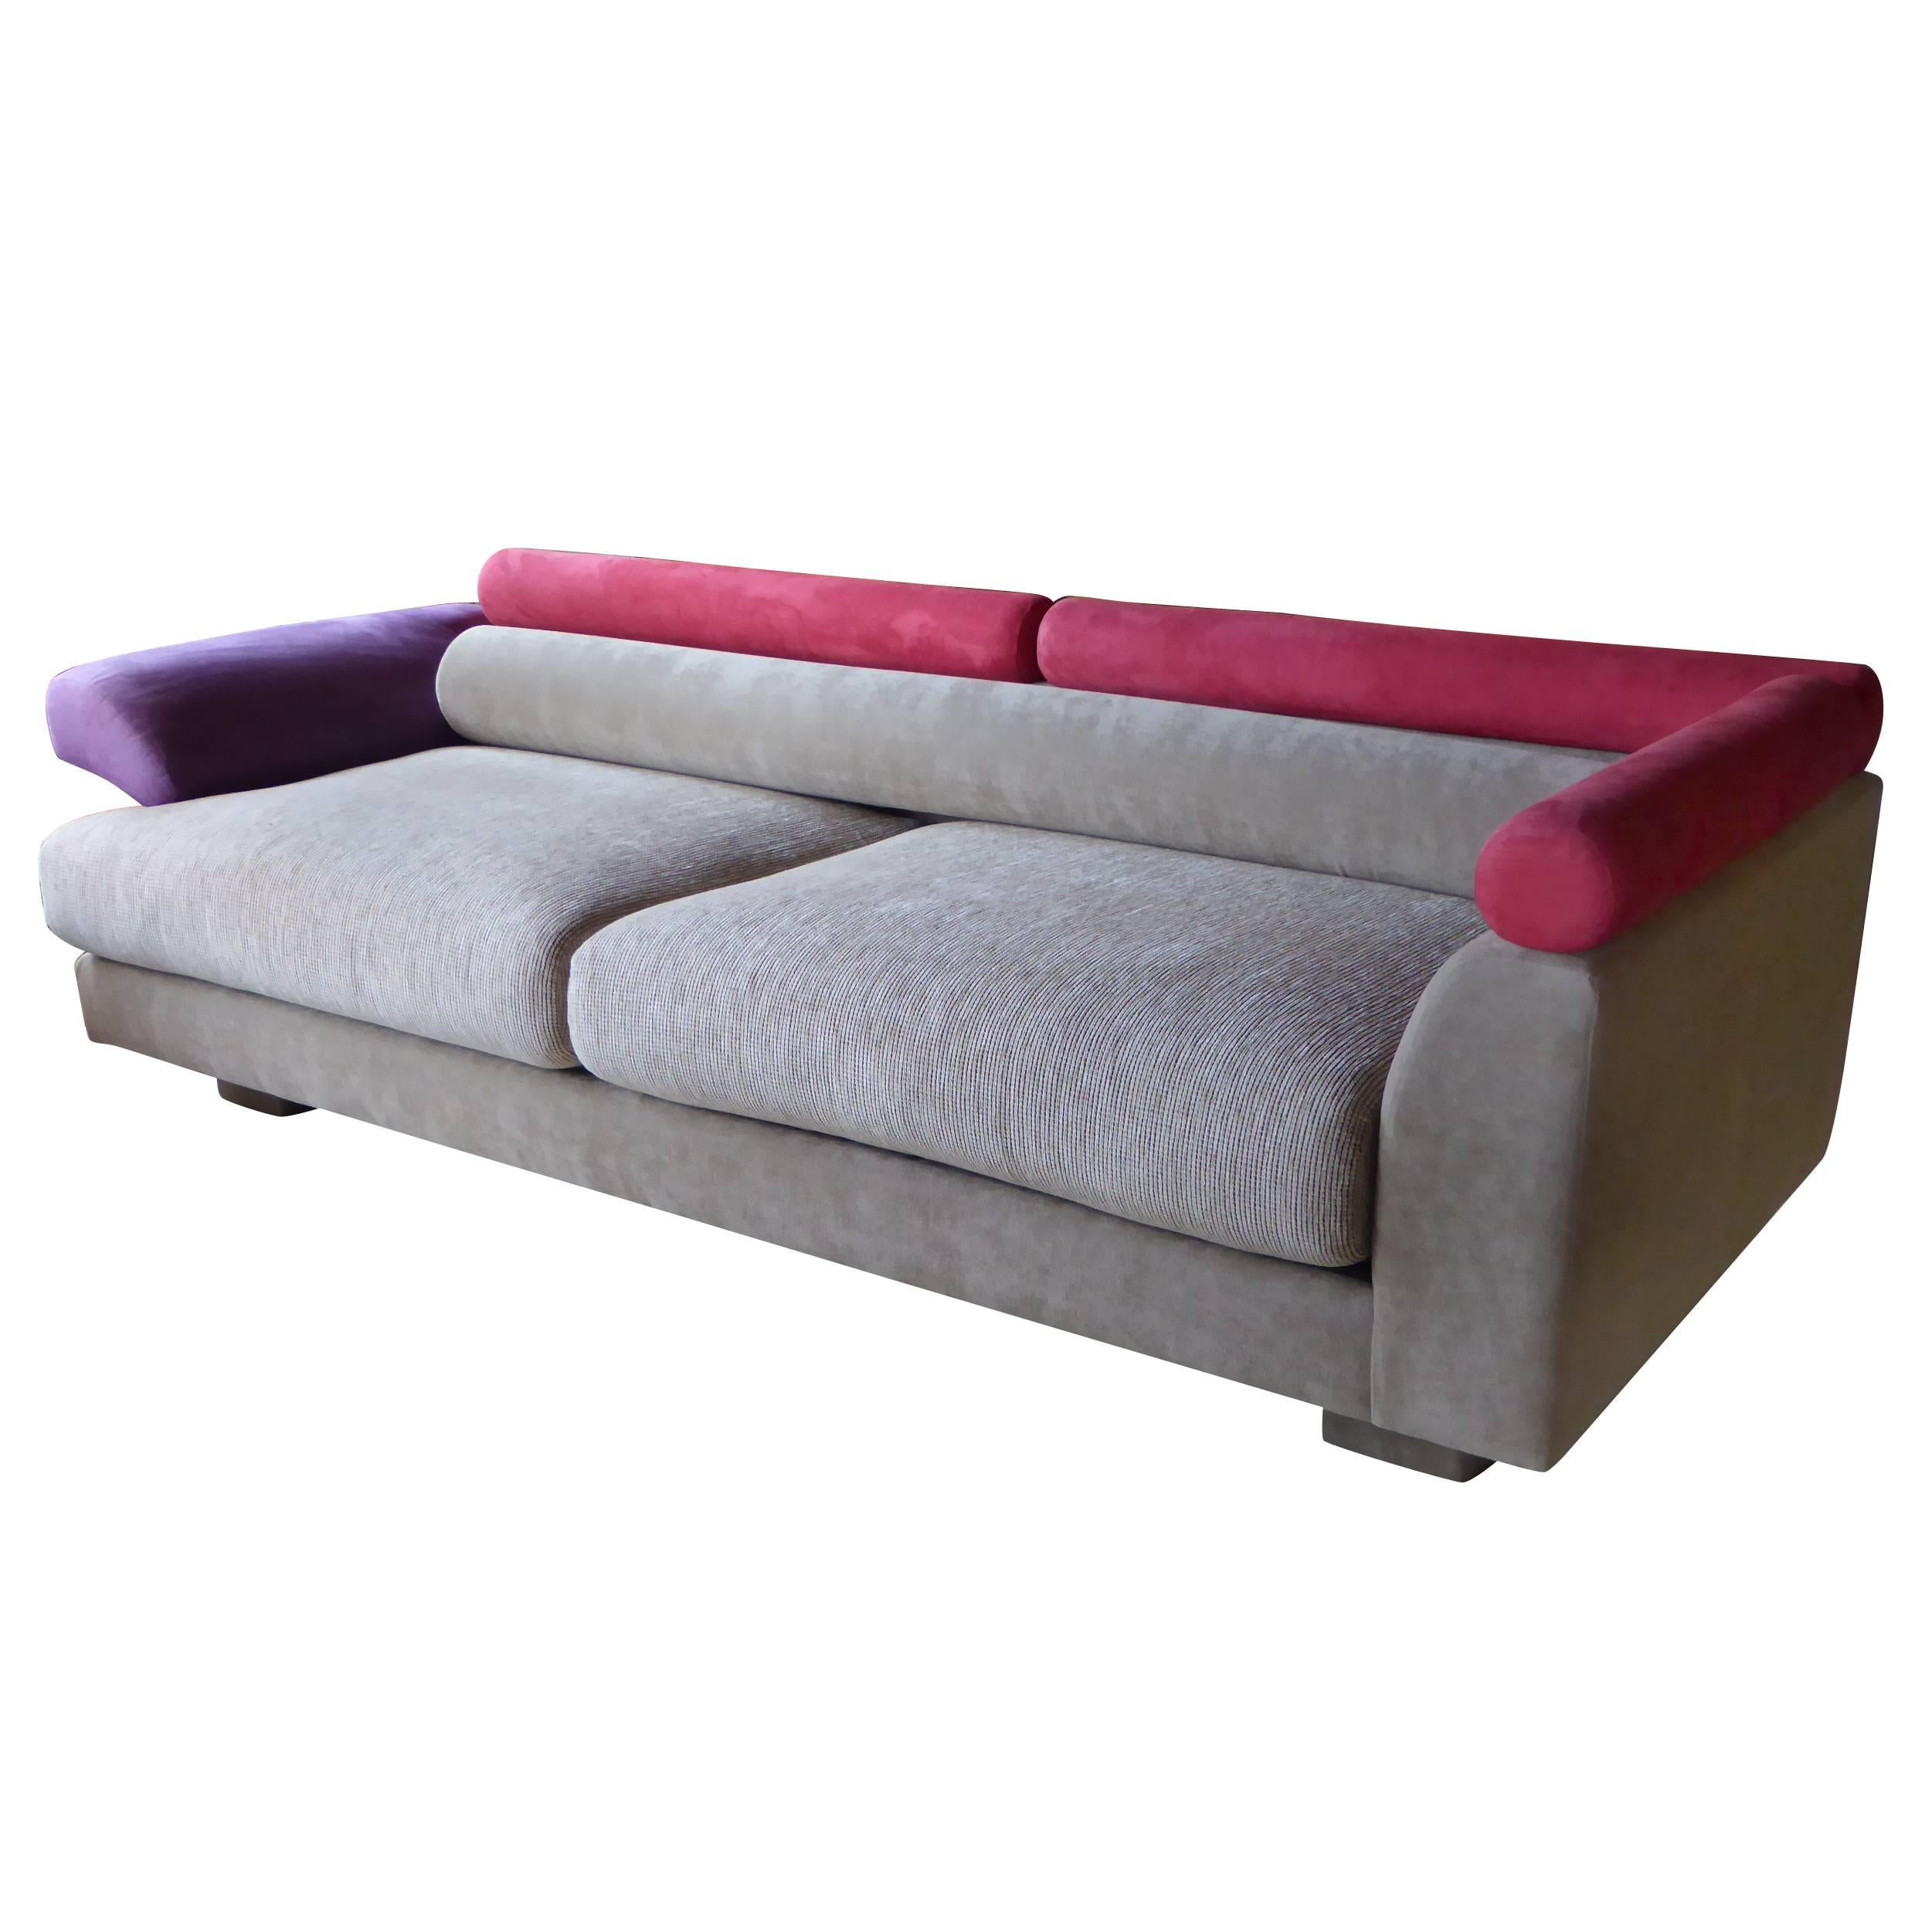 1980s Elegant Post Modern Memphis Inspired Sofa